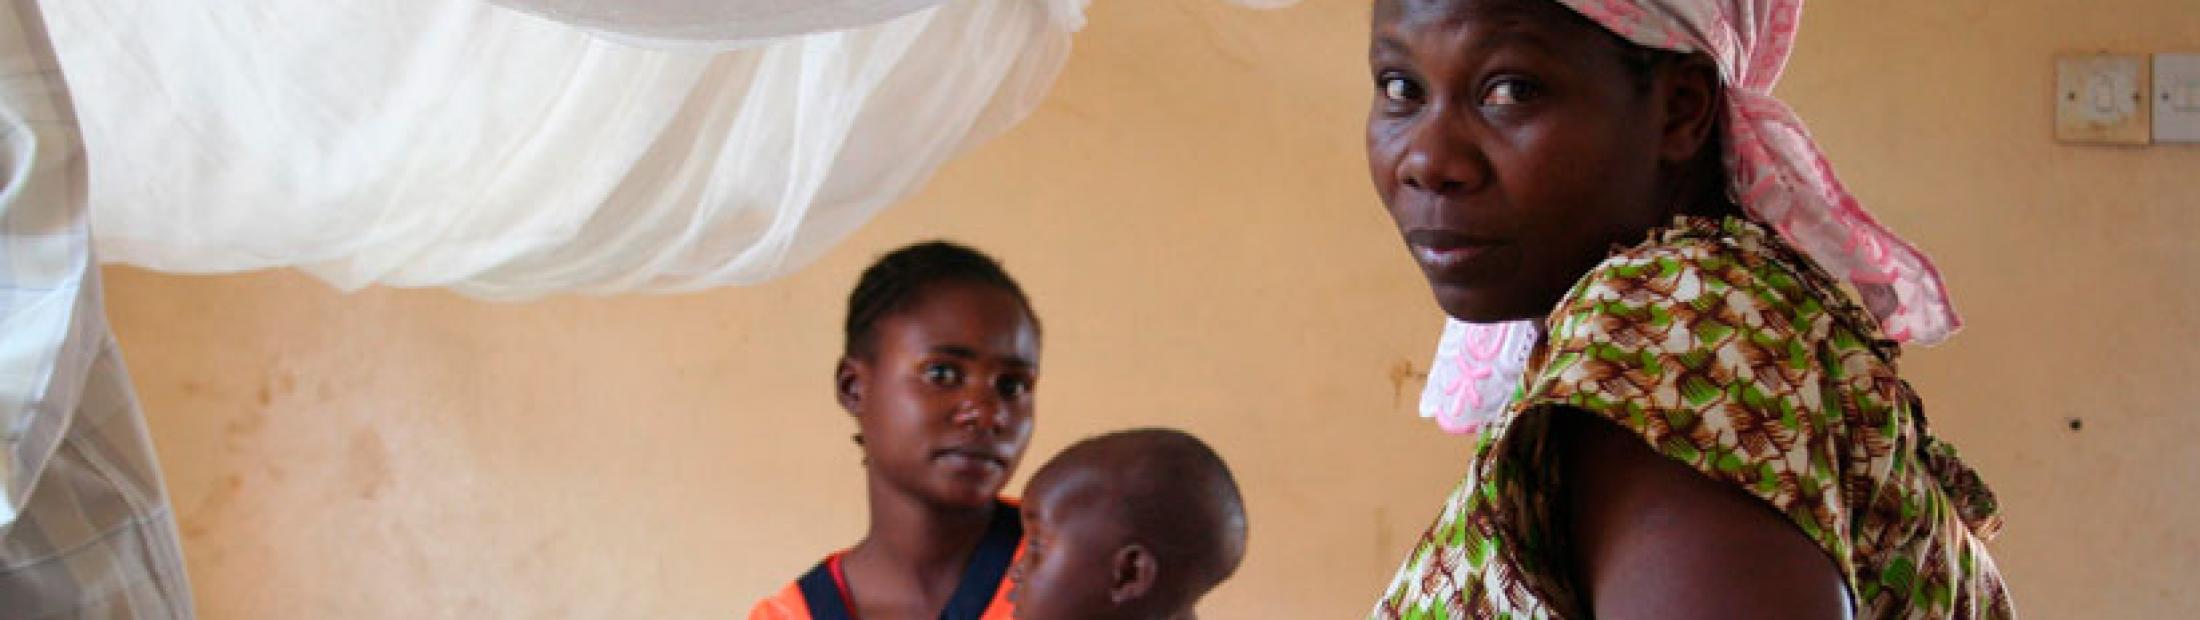 Malaria: una estrategia integral para su cura